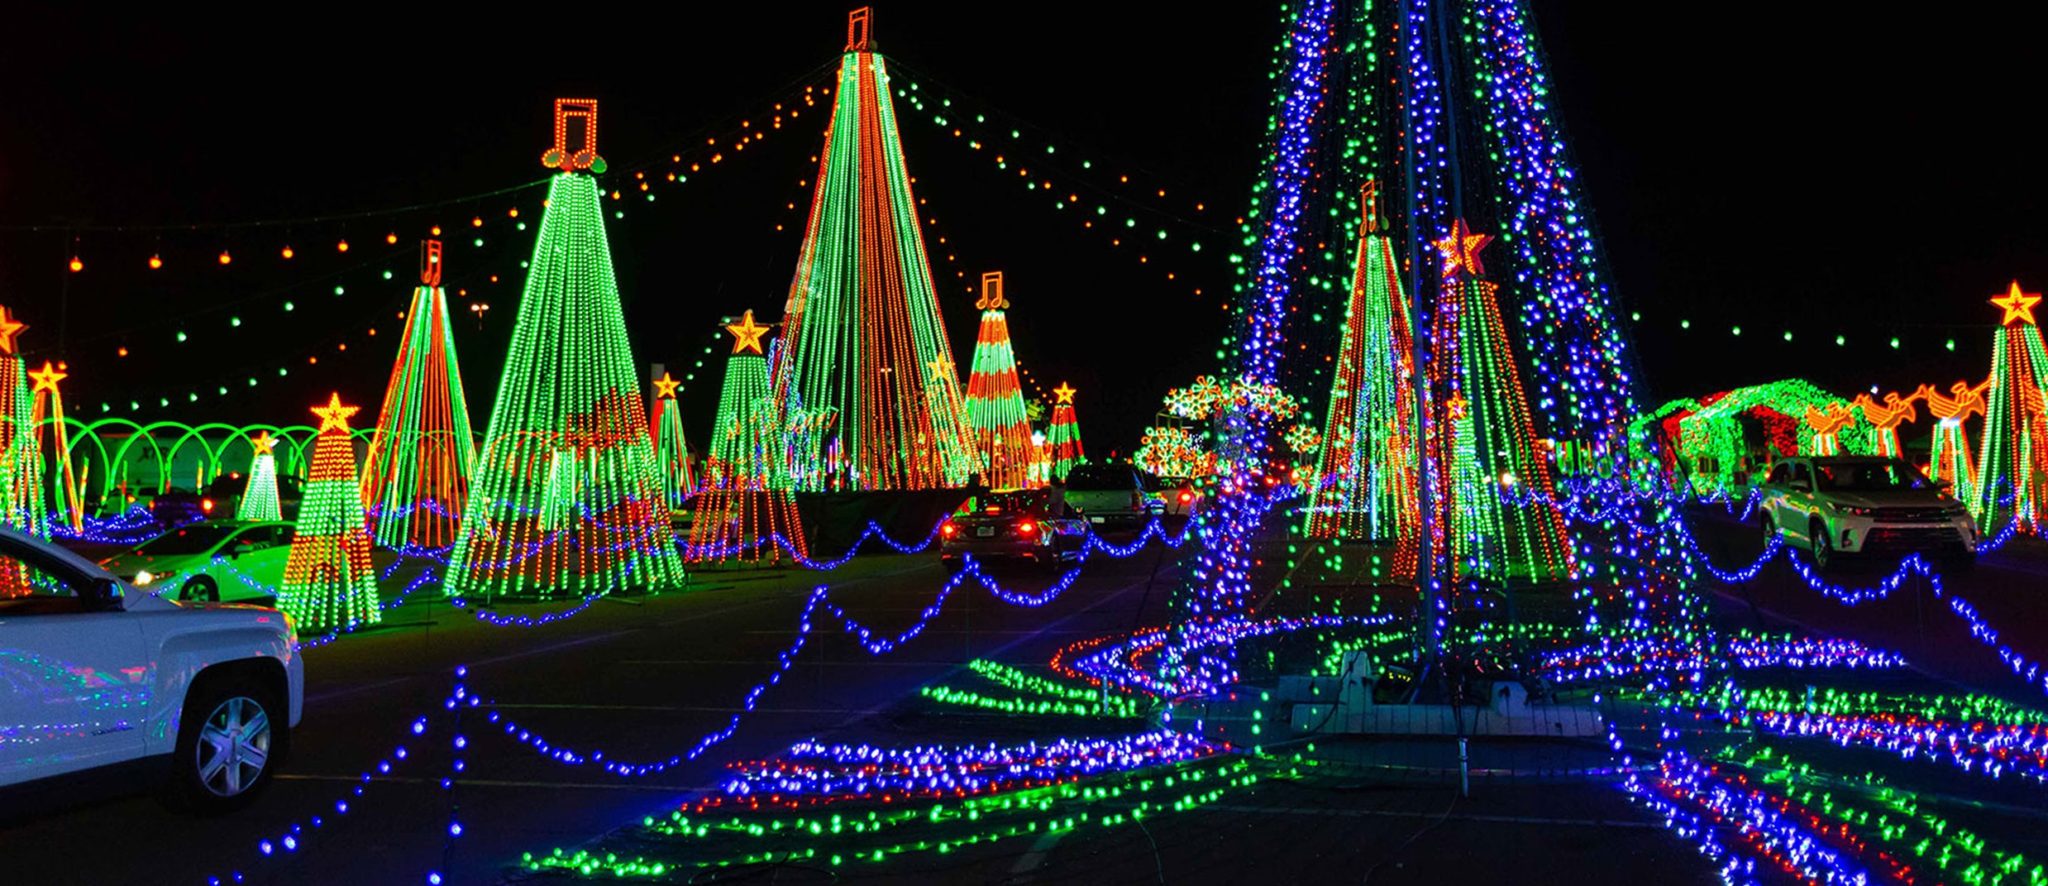 Christmas Holiday Festival of Lights Display